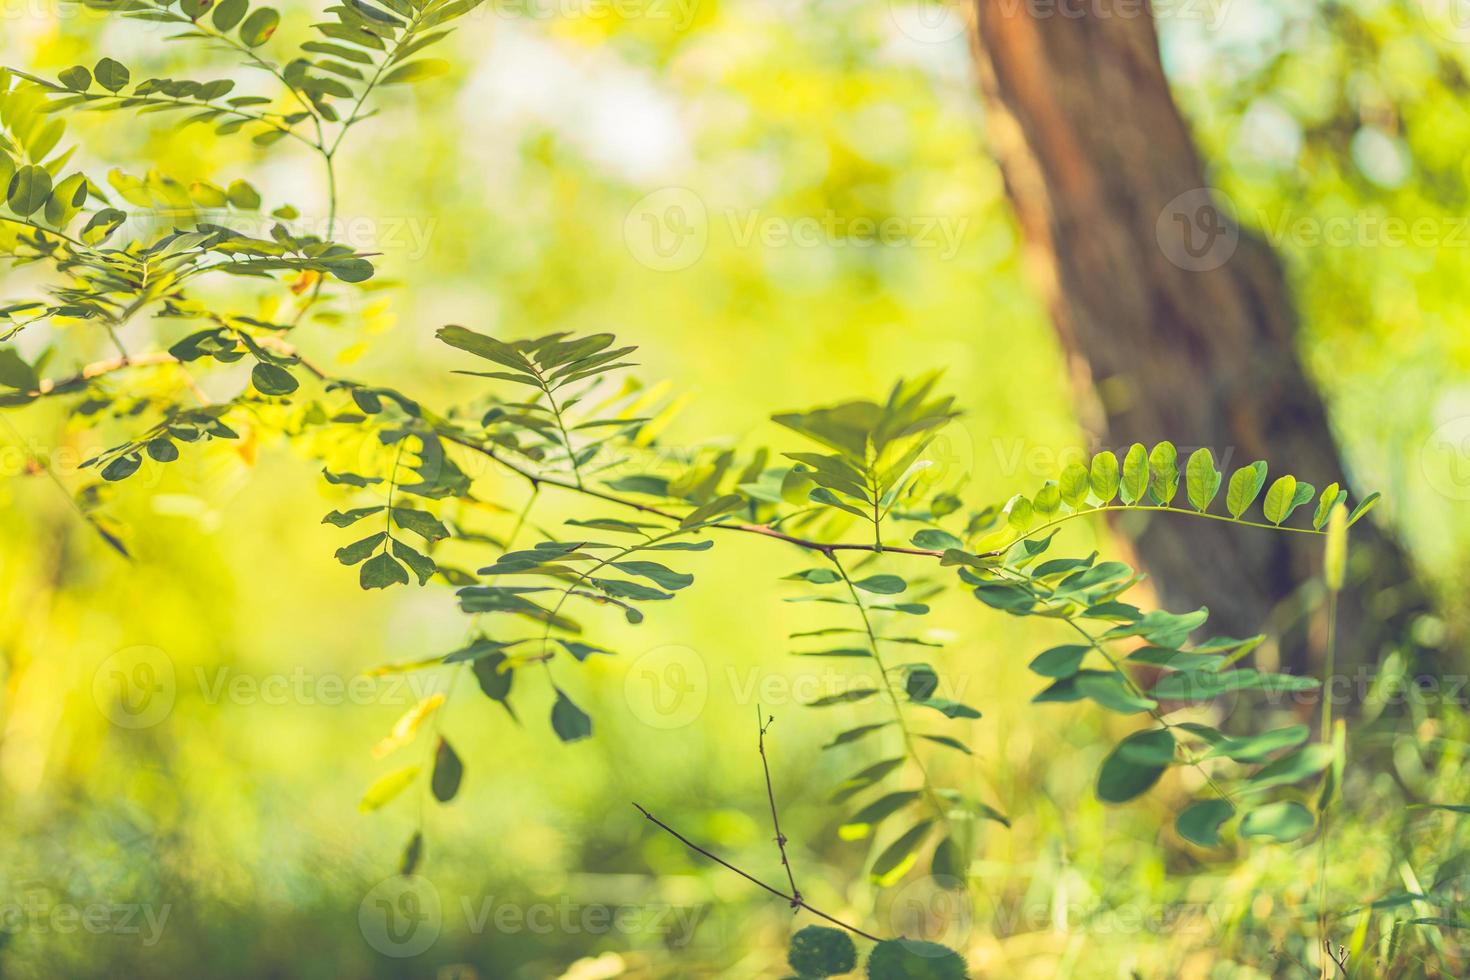 Sonnenstrahlen und grüner Wald, Nahaufnahme von Zweigen mit schönen grünen Blättern. friedlicher naturhintergrund, frühlingssommerpflanze, frische als natürliche umgebung, ökologiekonzept foto